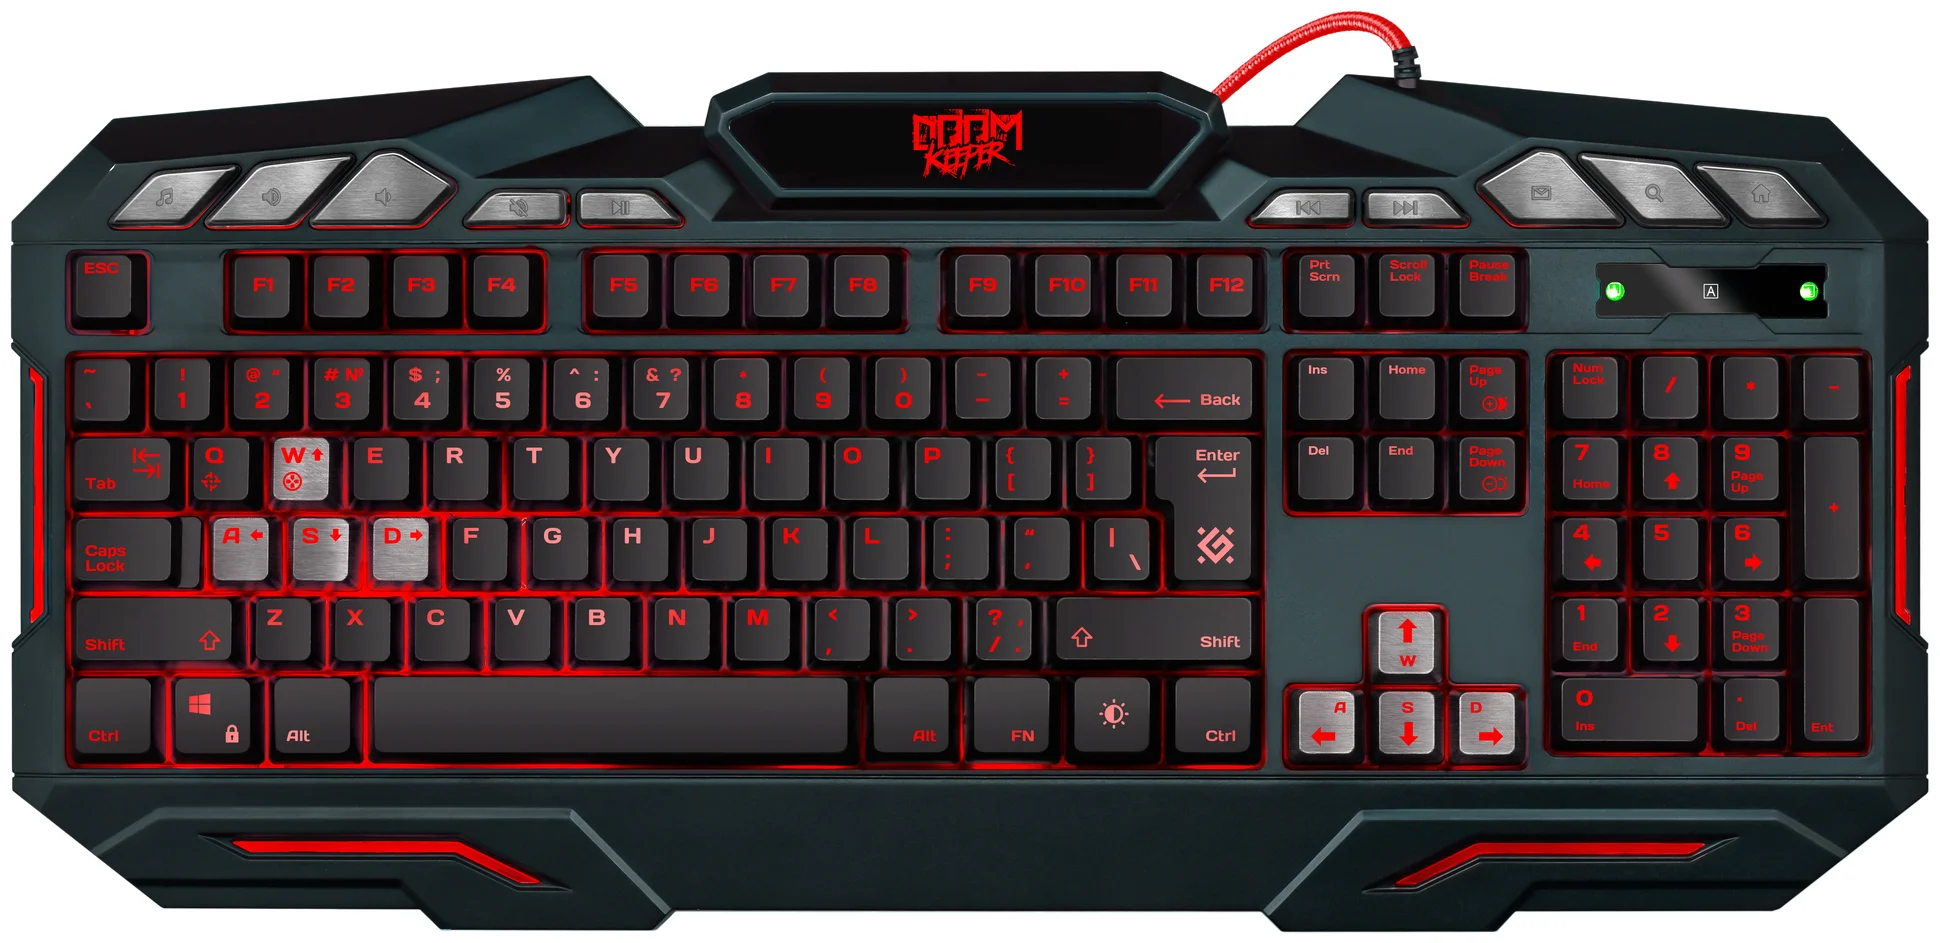 Проводная игровая клавиатура Defender Doom Keeper Black (45100), купить в Москве, цены в интернет-магазинах на Мегамаркет